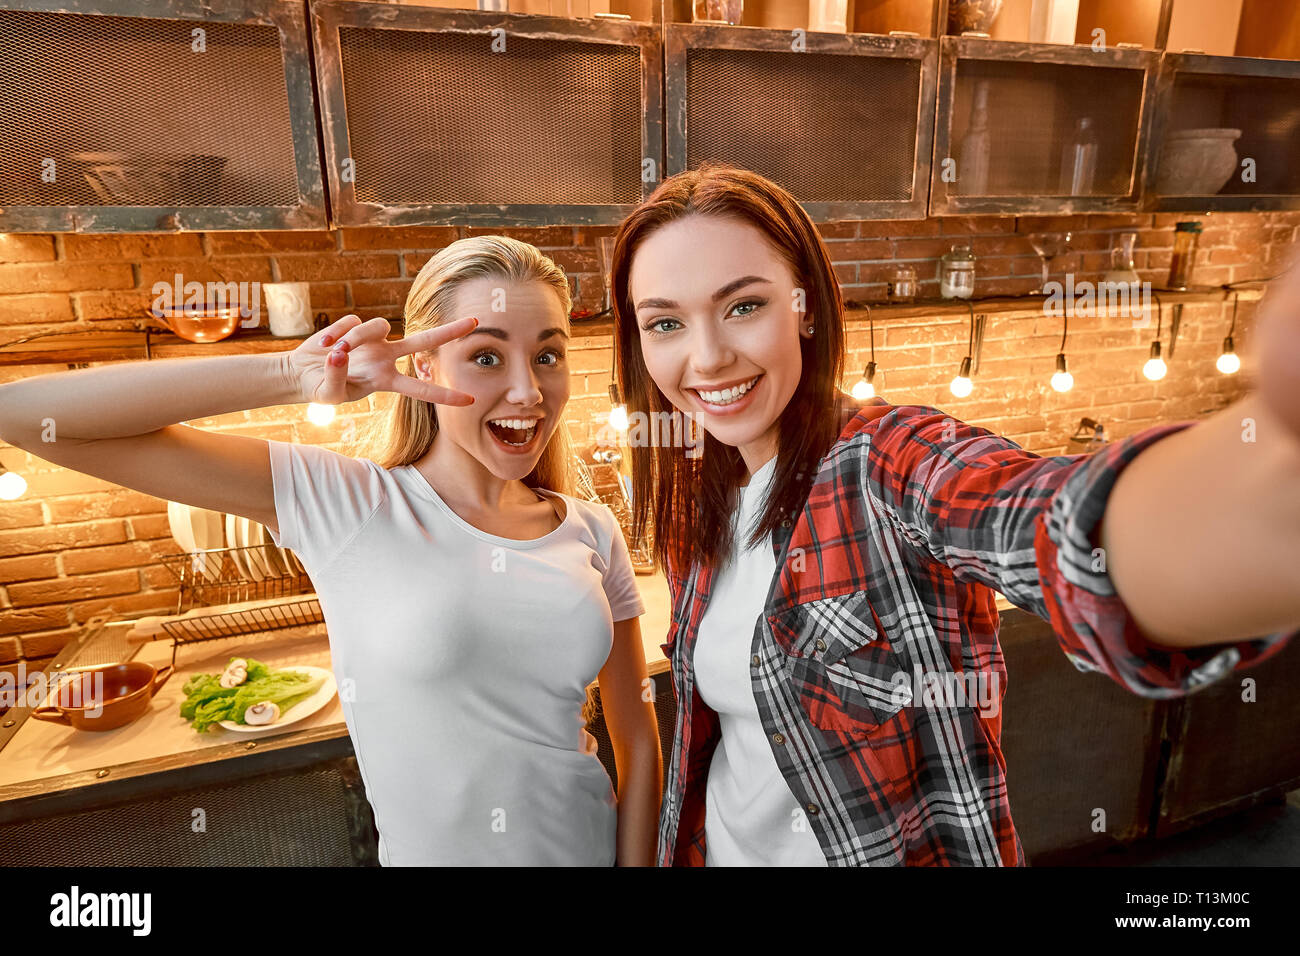 Selfie von zwei fröhlichen Frauen, Spaß haben, während der Vorbereitung ein Gericht. Dunkelhaarige Mädchen mit kariertem Hemd ist ein Foto, während ihre blonde Freundin für Sie stellt. Sie zeigt V-Schild in der Nähe ihre Augen und lächelte. Stockfoto